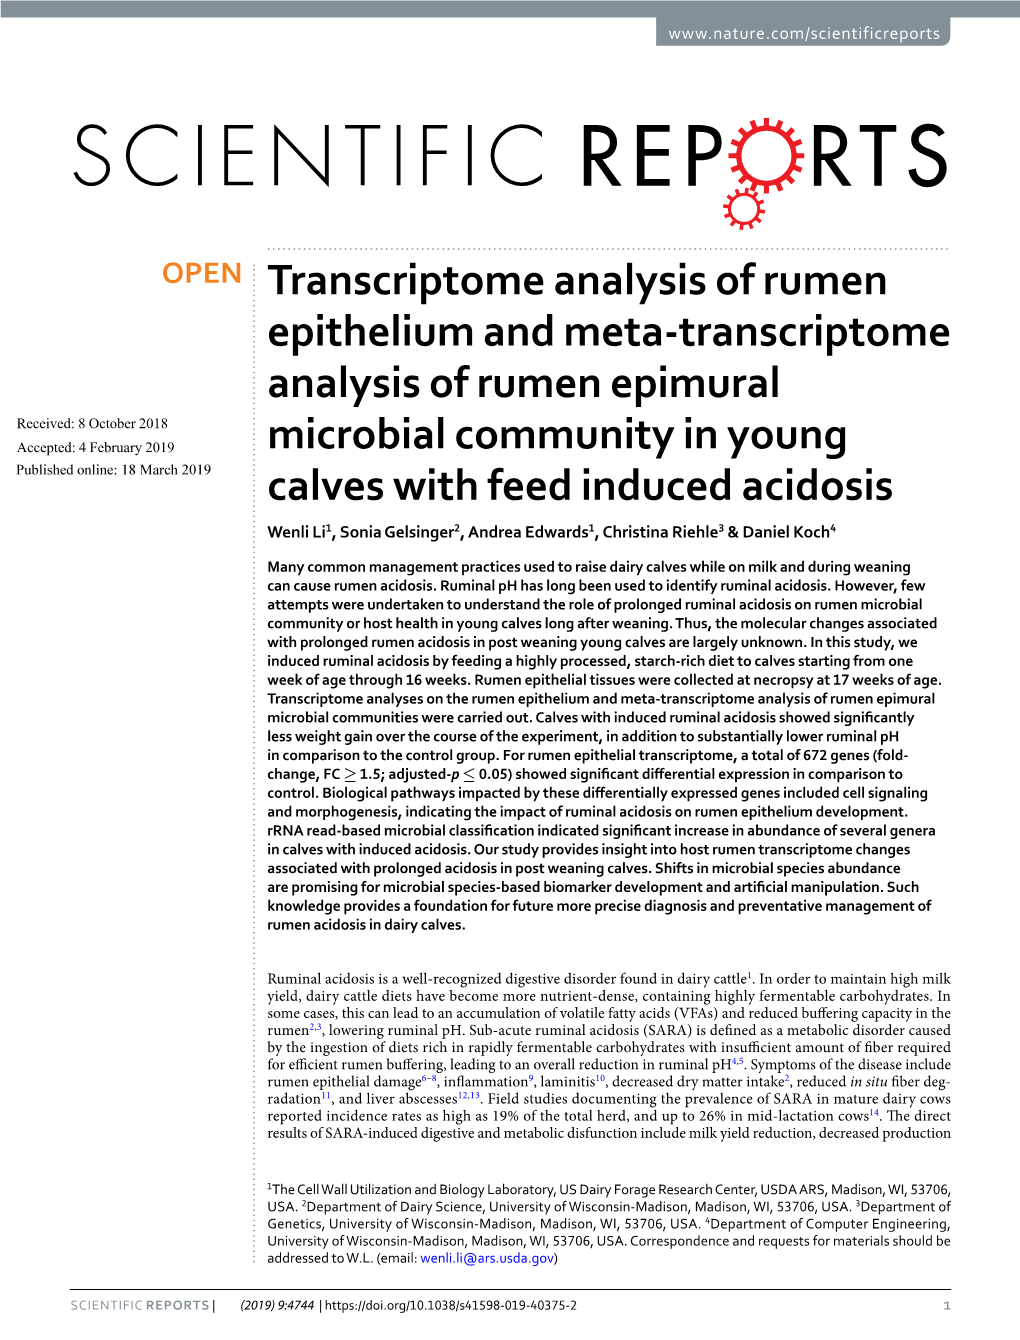 Transcriptome Analysis of Rumen Epithelium and Meta-Transcriptome